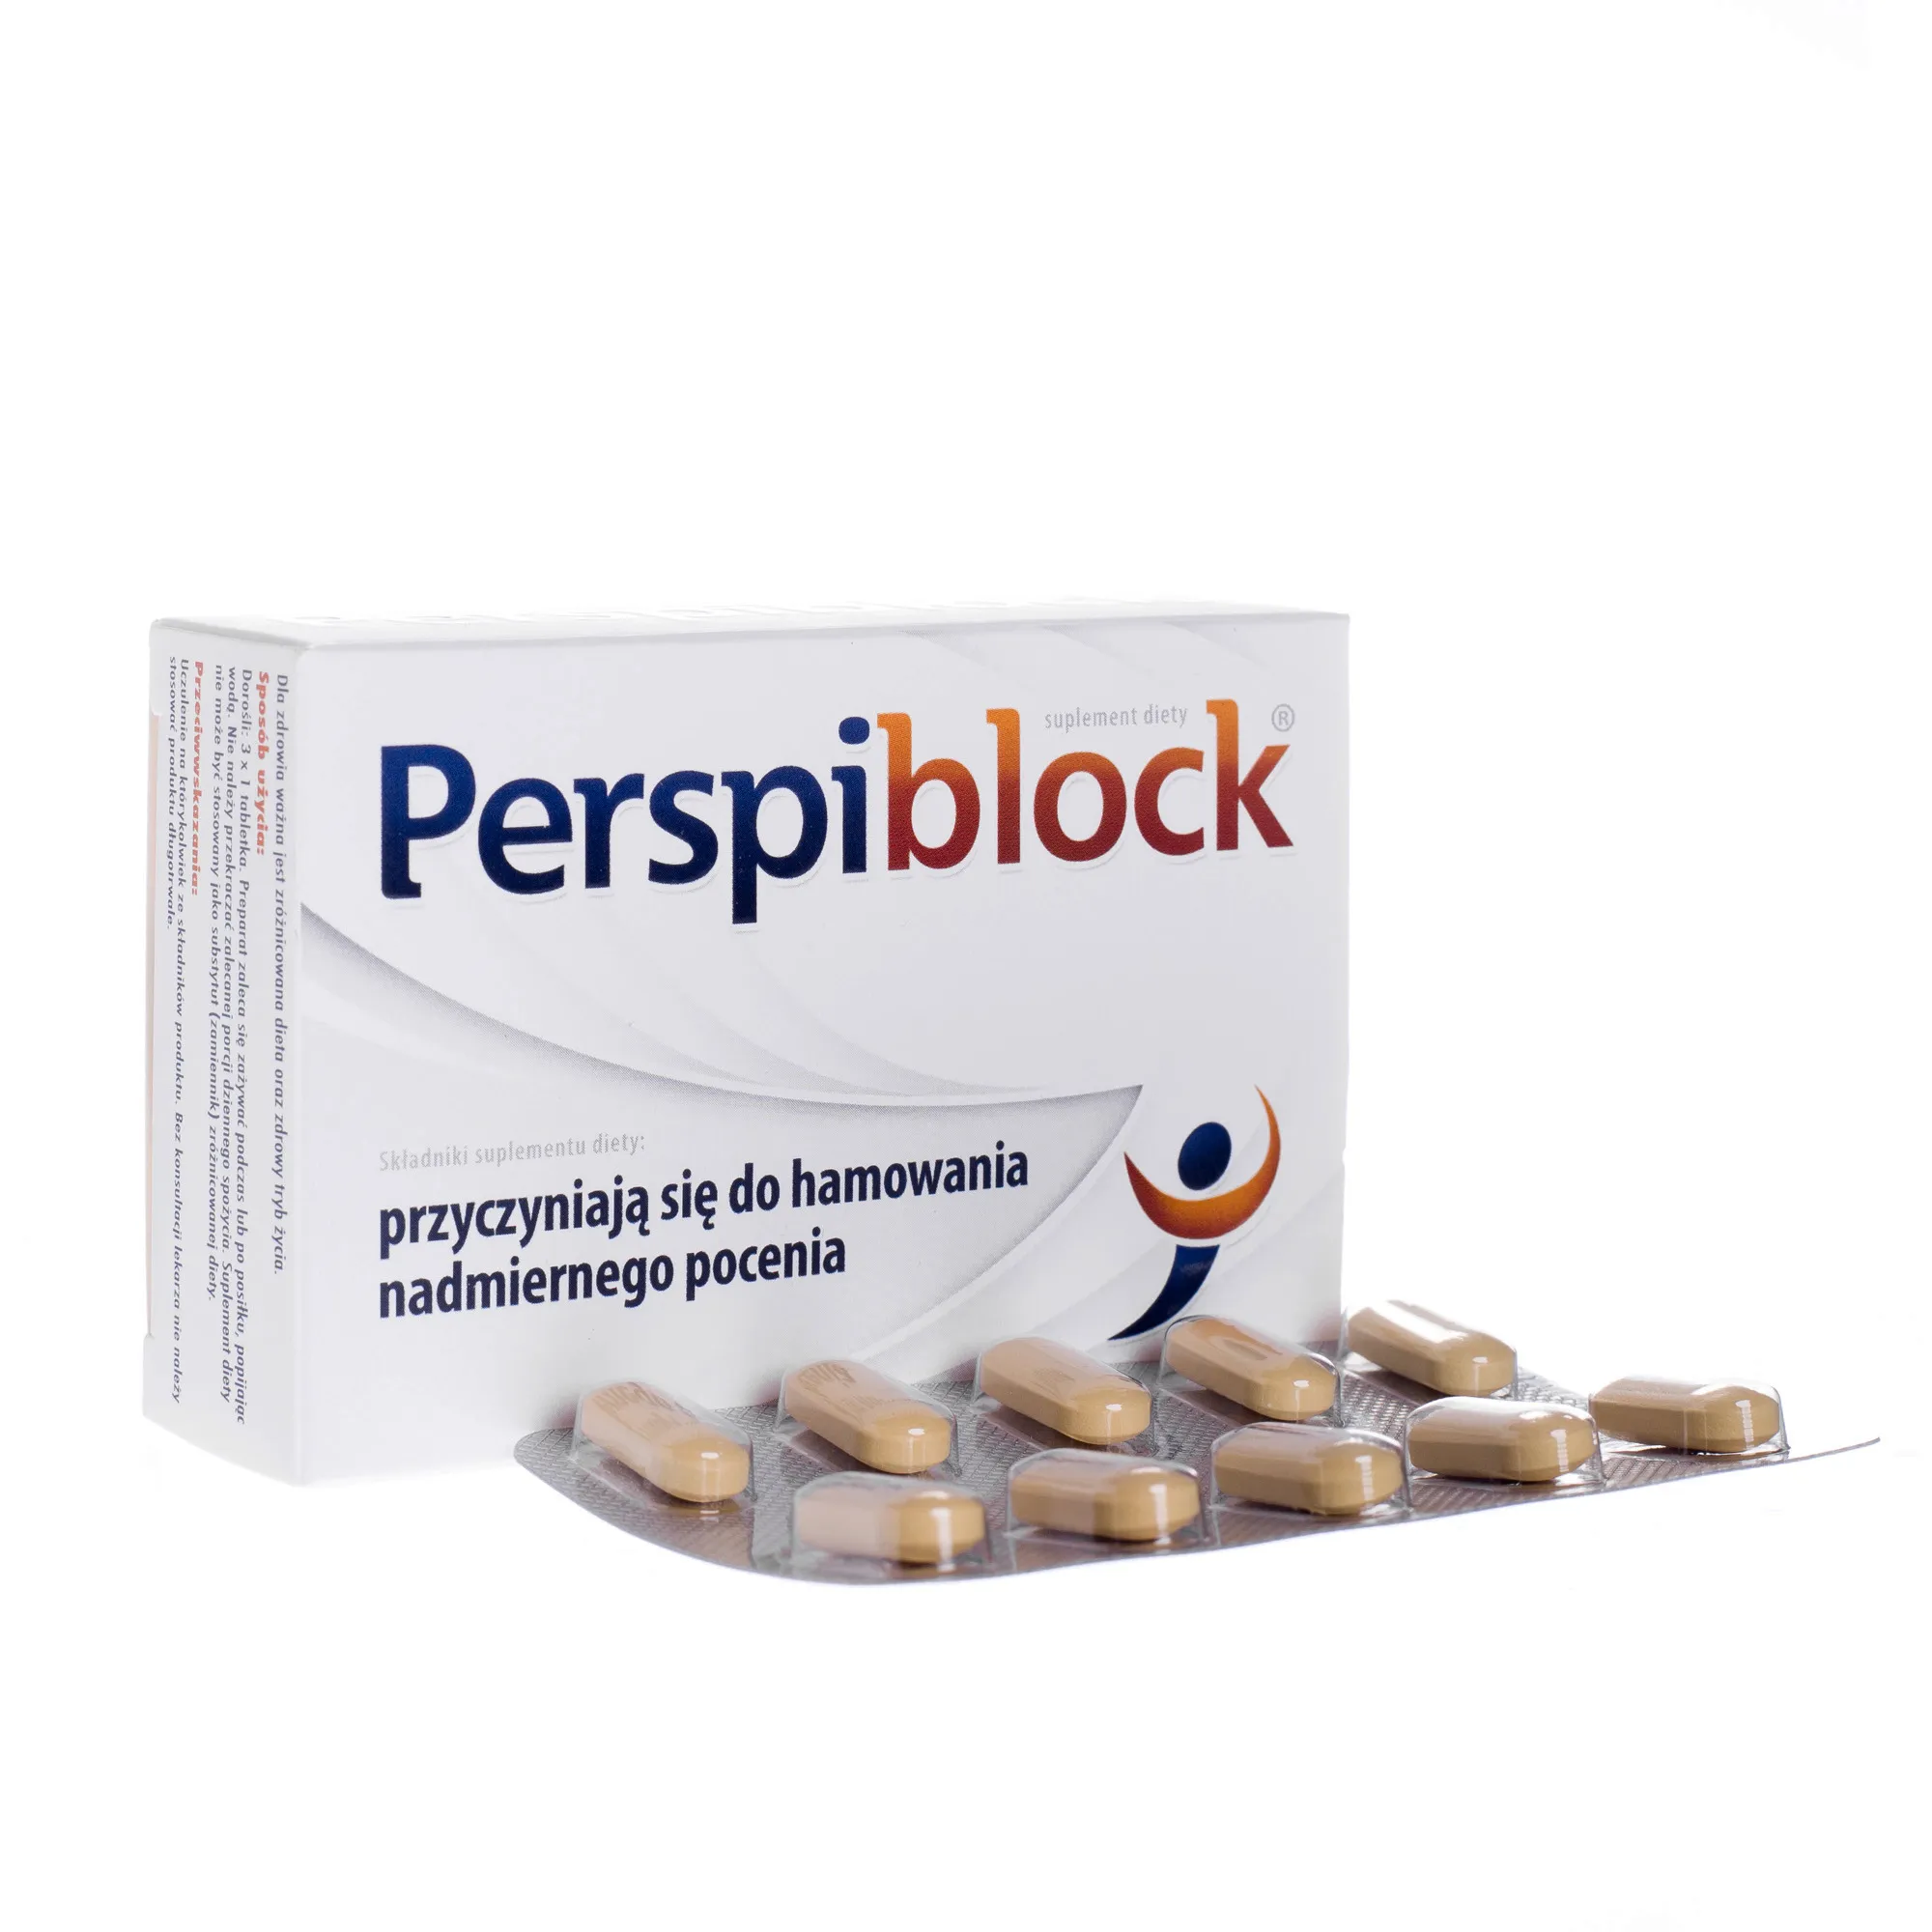 Perspiblock suplement diety, 30 tabletek 